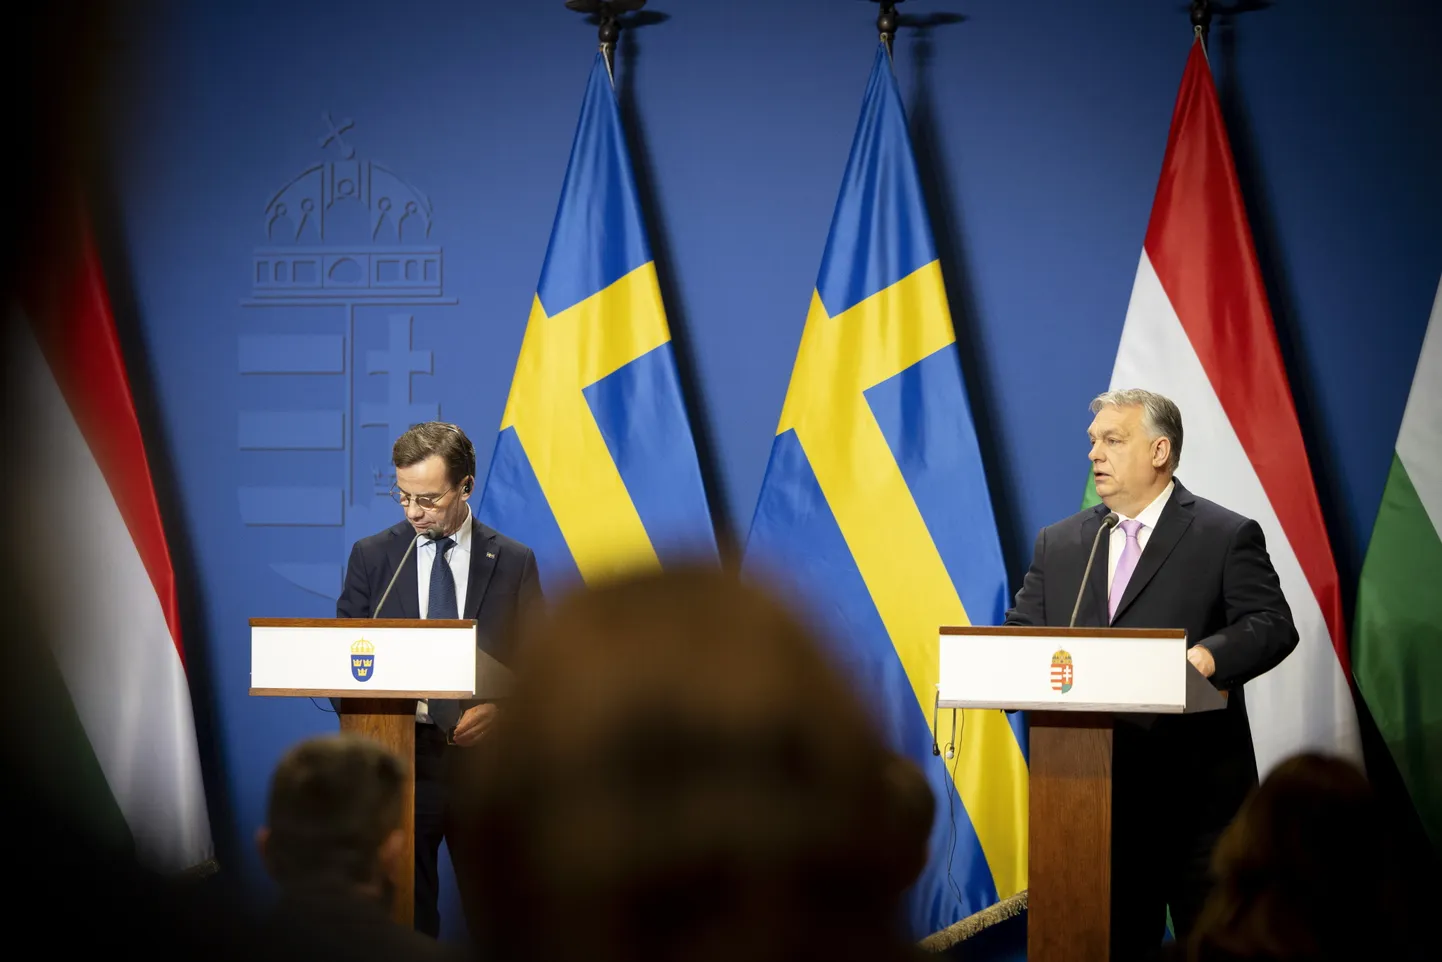 Ungari peaminister Viktor Orbán ja Rootsi peaminister Ulf Kristersson pidasid möödunud reedel Ungaris Budapestis valitsuse peakorteris kõnelusi. Poliitilise vahekaubana müüb Rootsi Ungarile neli hävitajat Gripen, et viimane ratifitseeriks Rootsi liitumise NATOga.